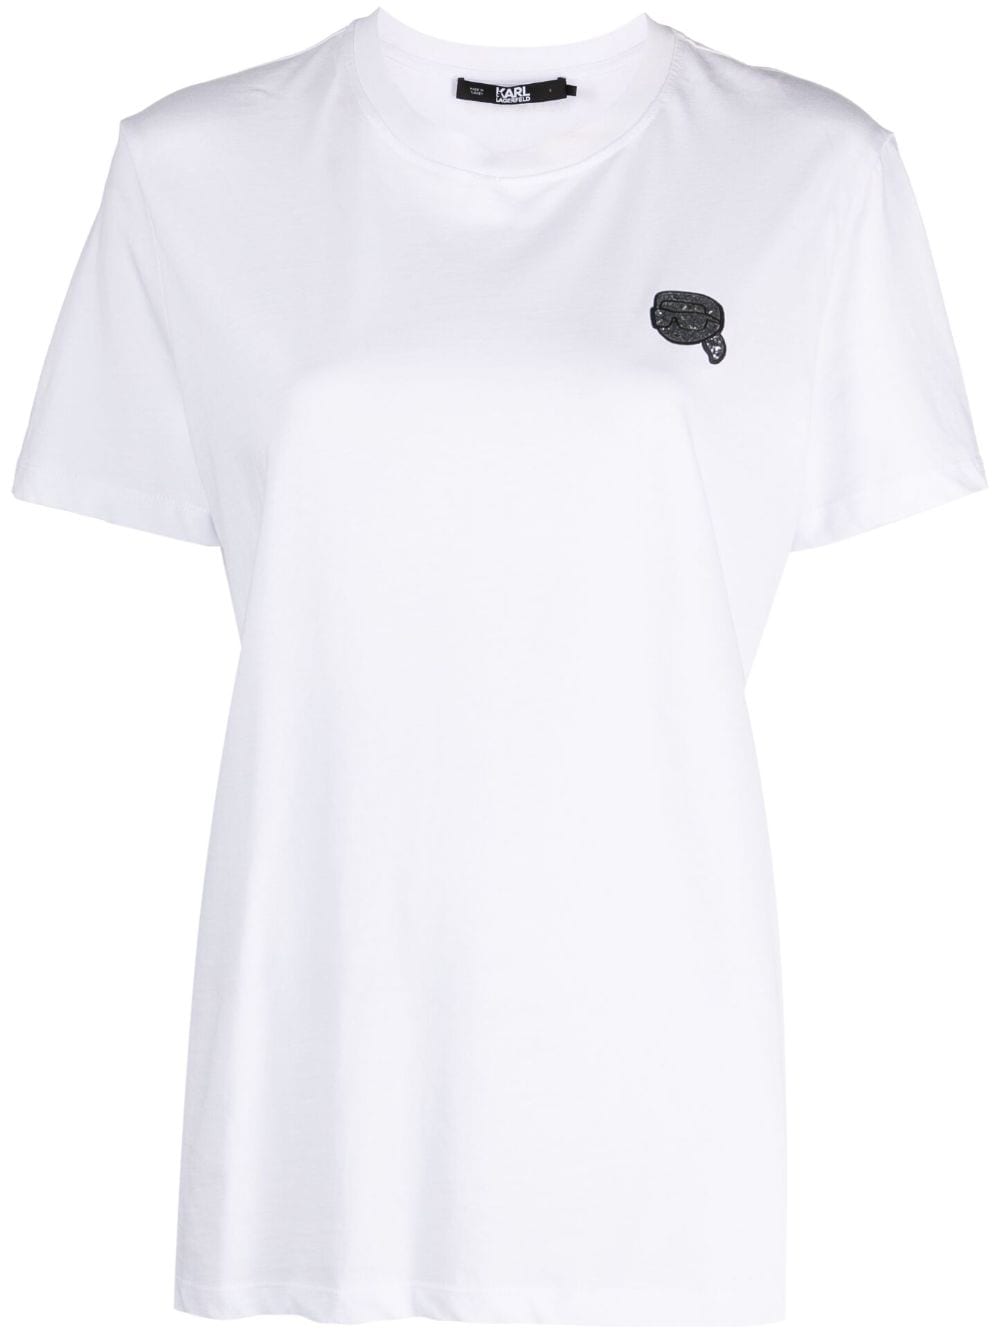 Karl Lagerfeld T-shirt Ikonik 2.0 Glitter - Bianco